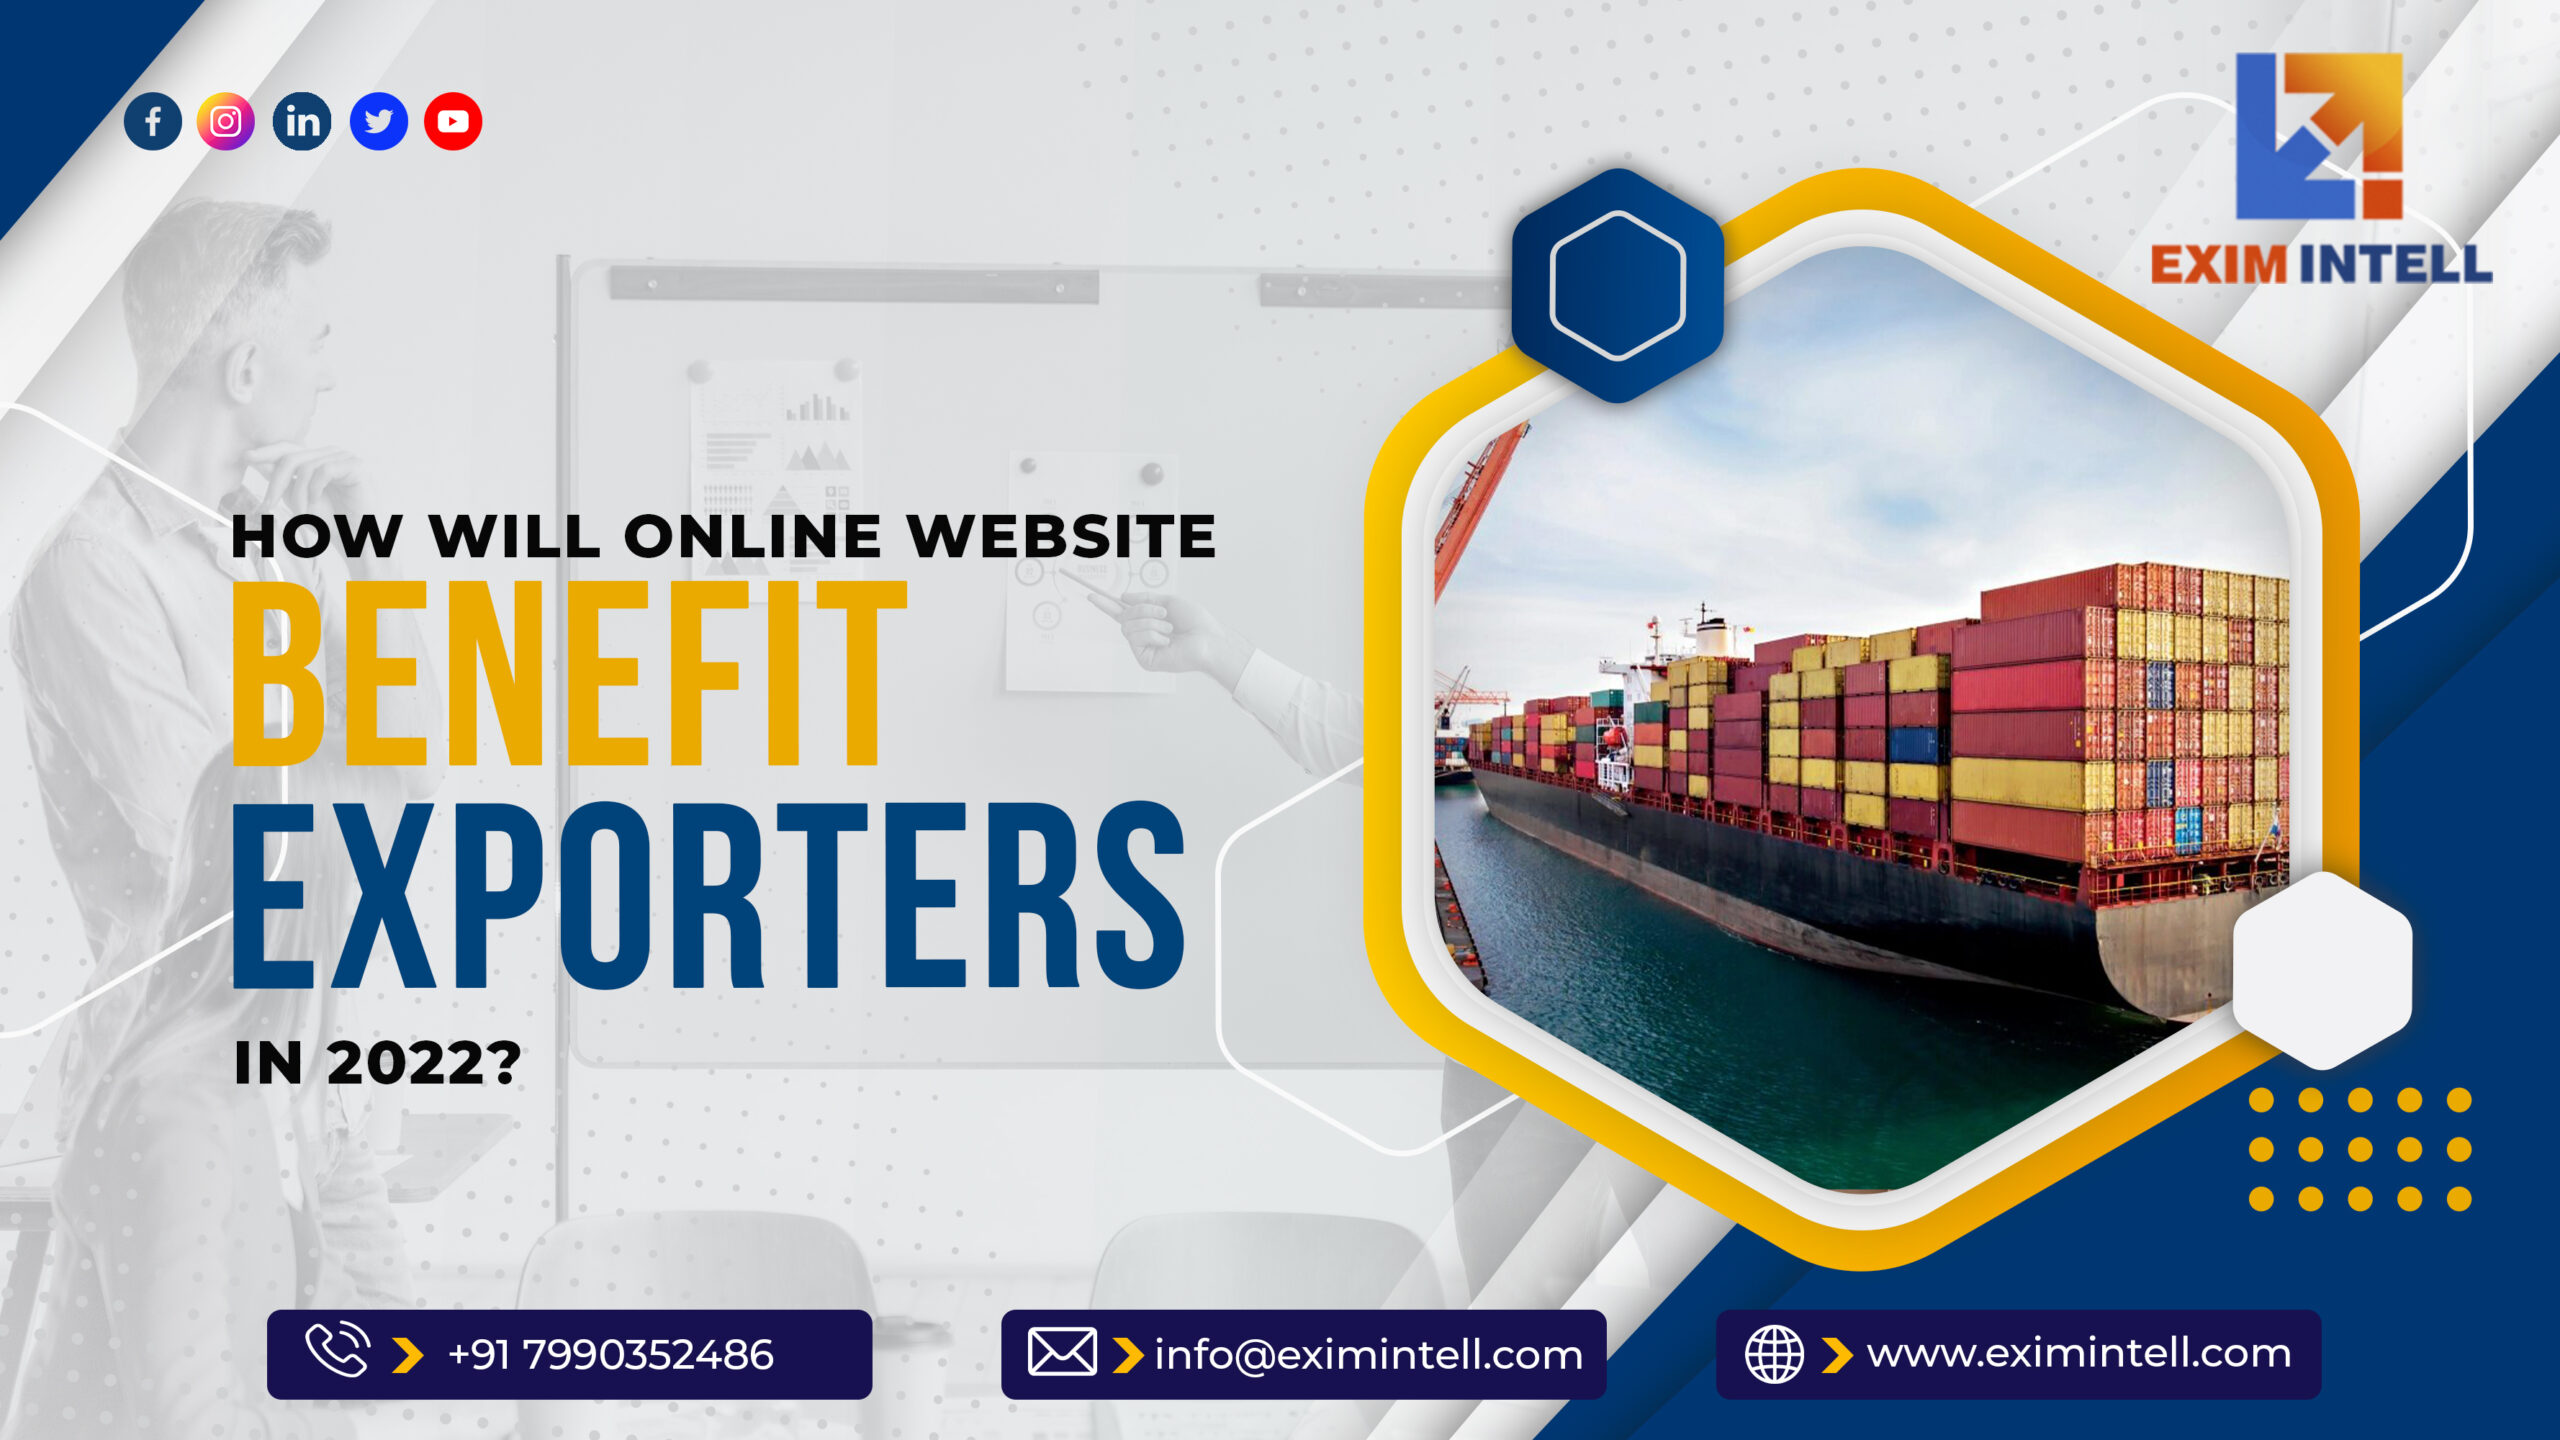 How will Online Website benefit exporters in 2022?